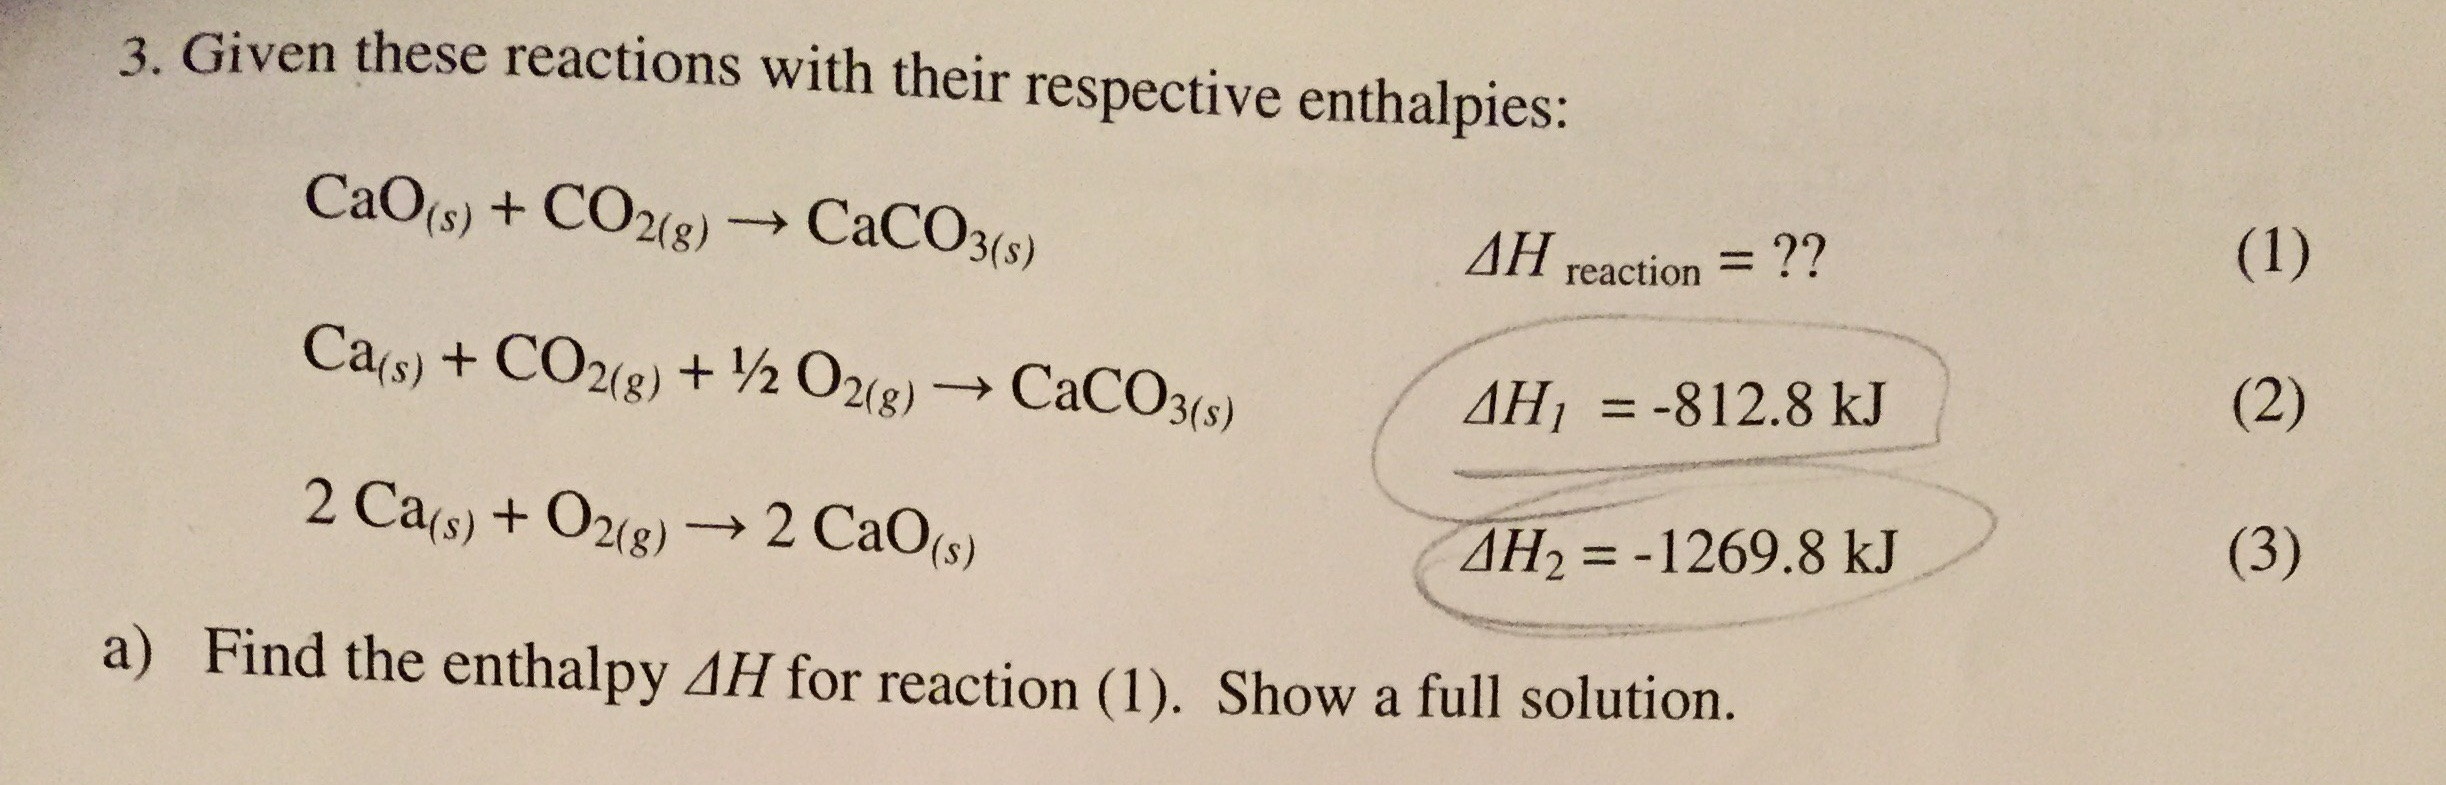 Реакция caco3 cao co2 является реакцией